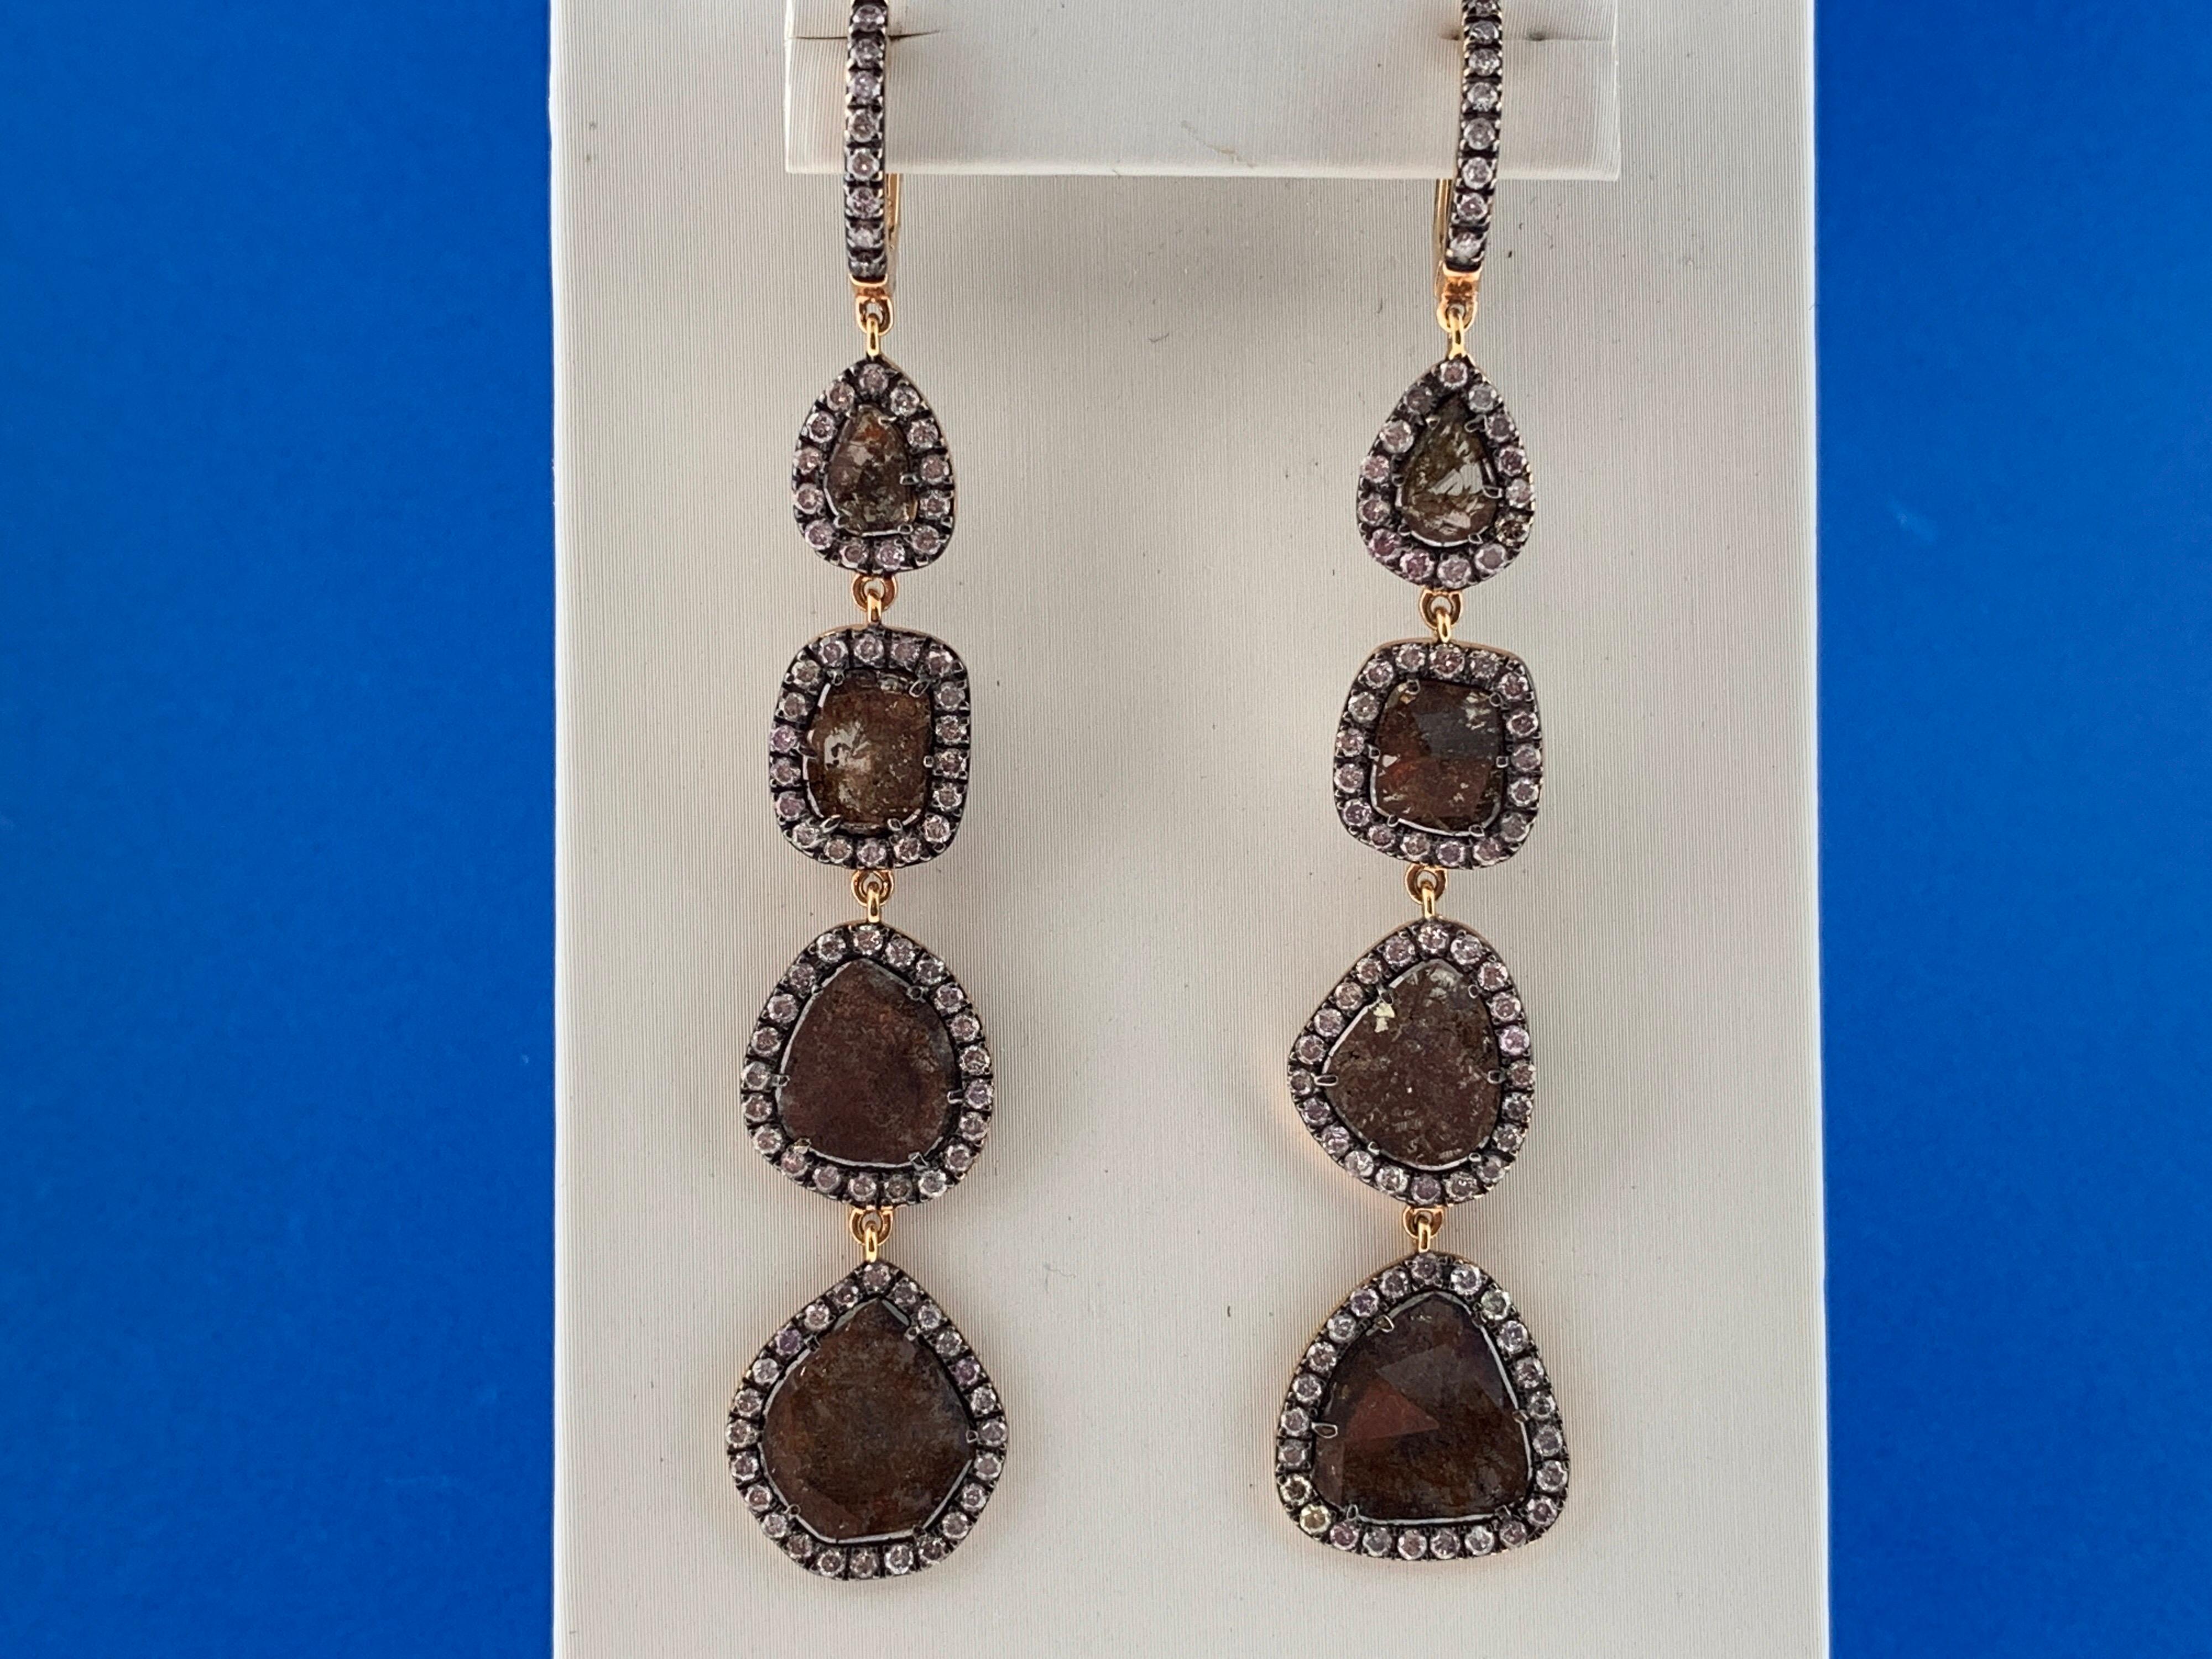 Diese atemberaubenden Ohrringe bestehen aus 8 braunen Diamanten im Rosenschliff mit einem Gesamtgewicht von 5,97 Karat, die jeweils von einem Halo aus runden Brillanten umgeben sind und an einem Diamantring hängen. Sie sind in eine Fassung aus 18